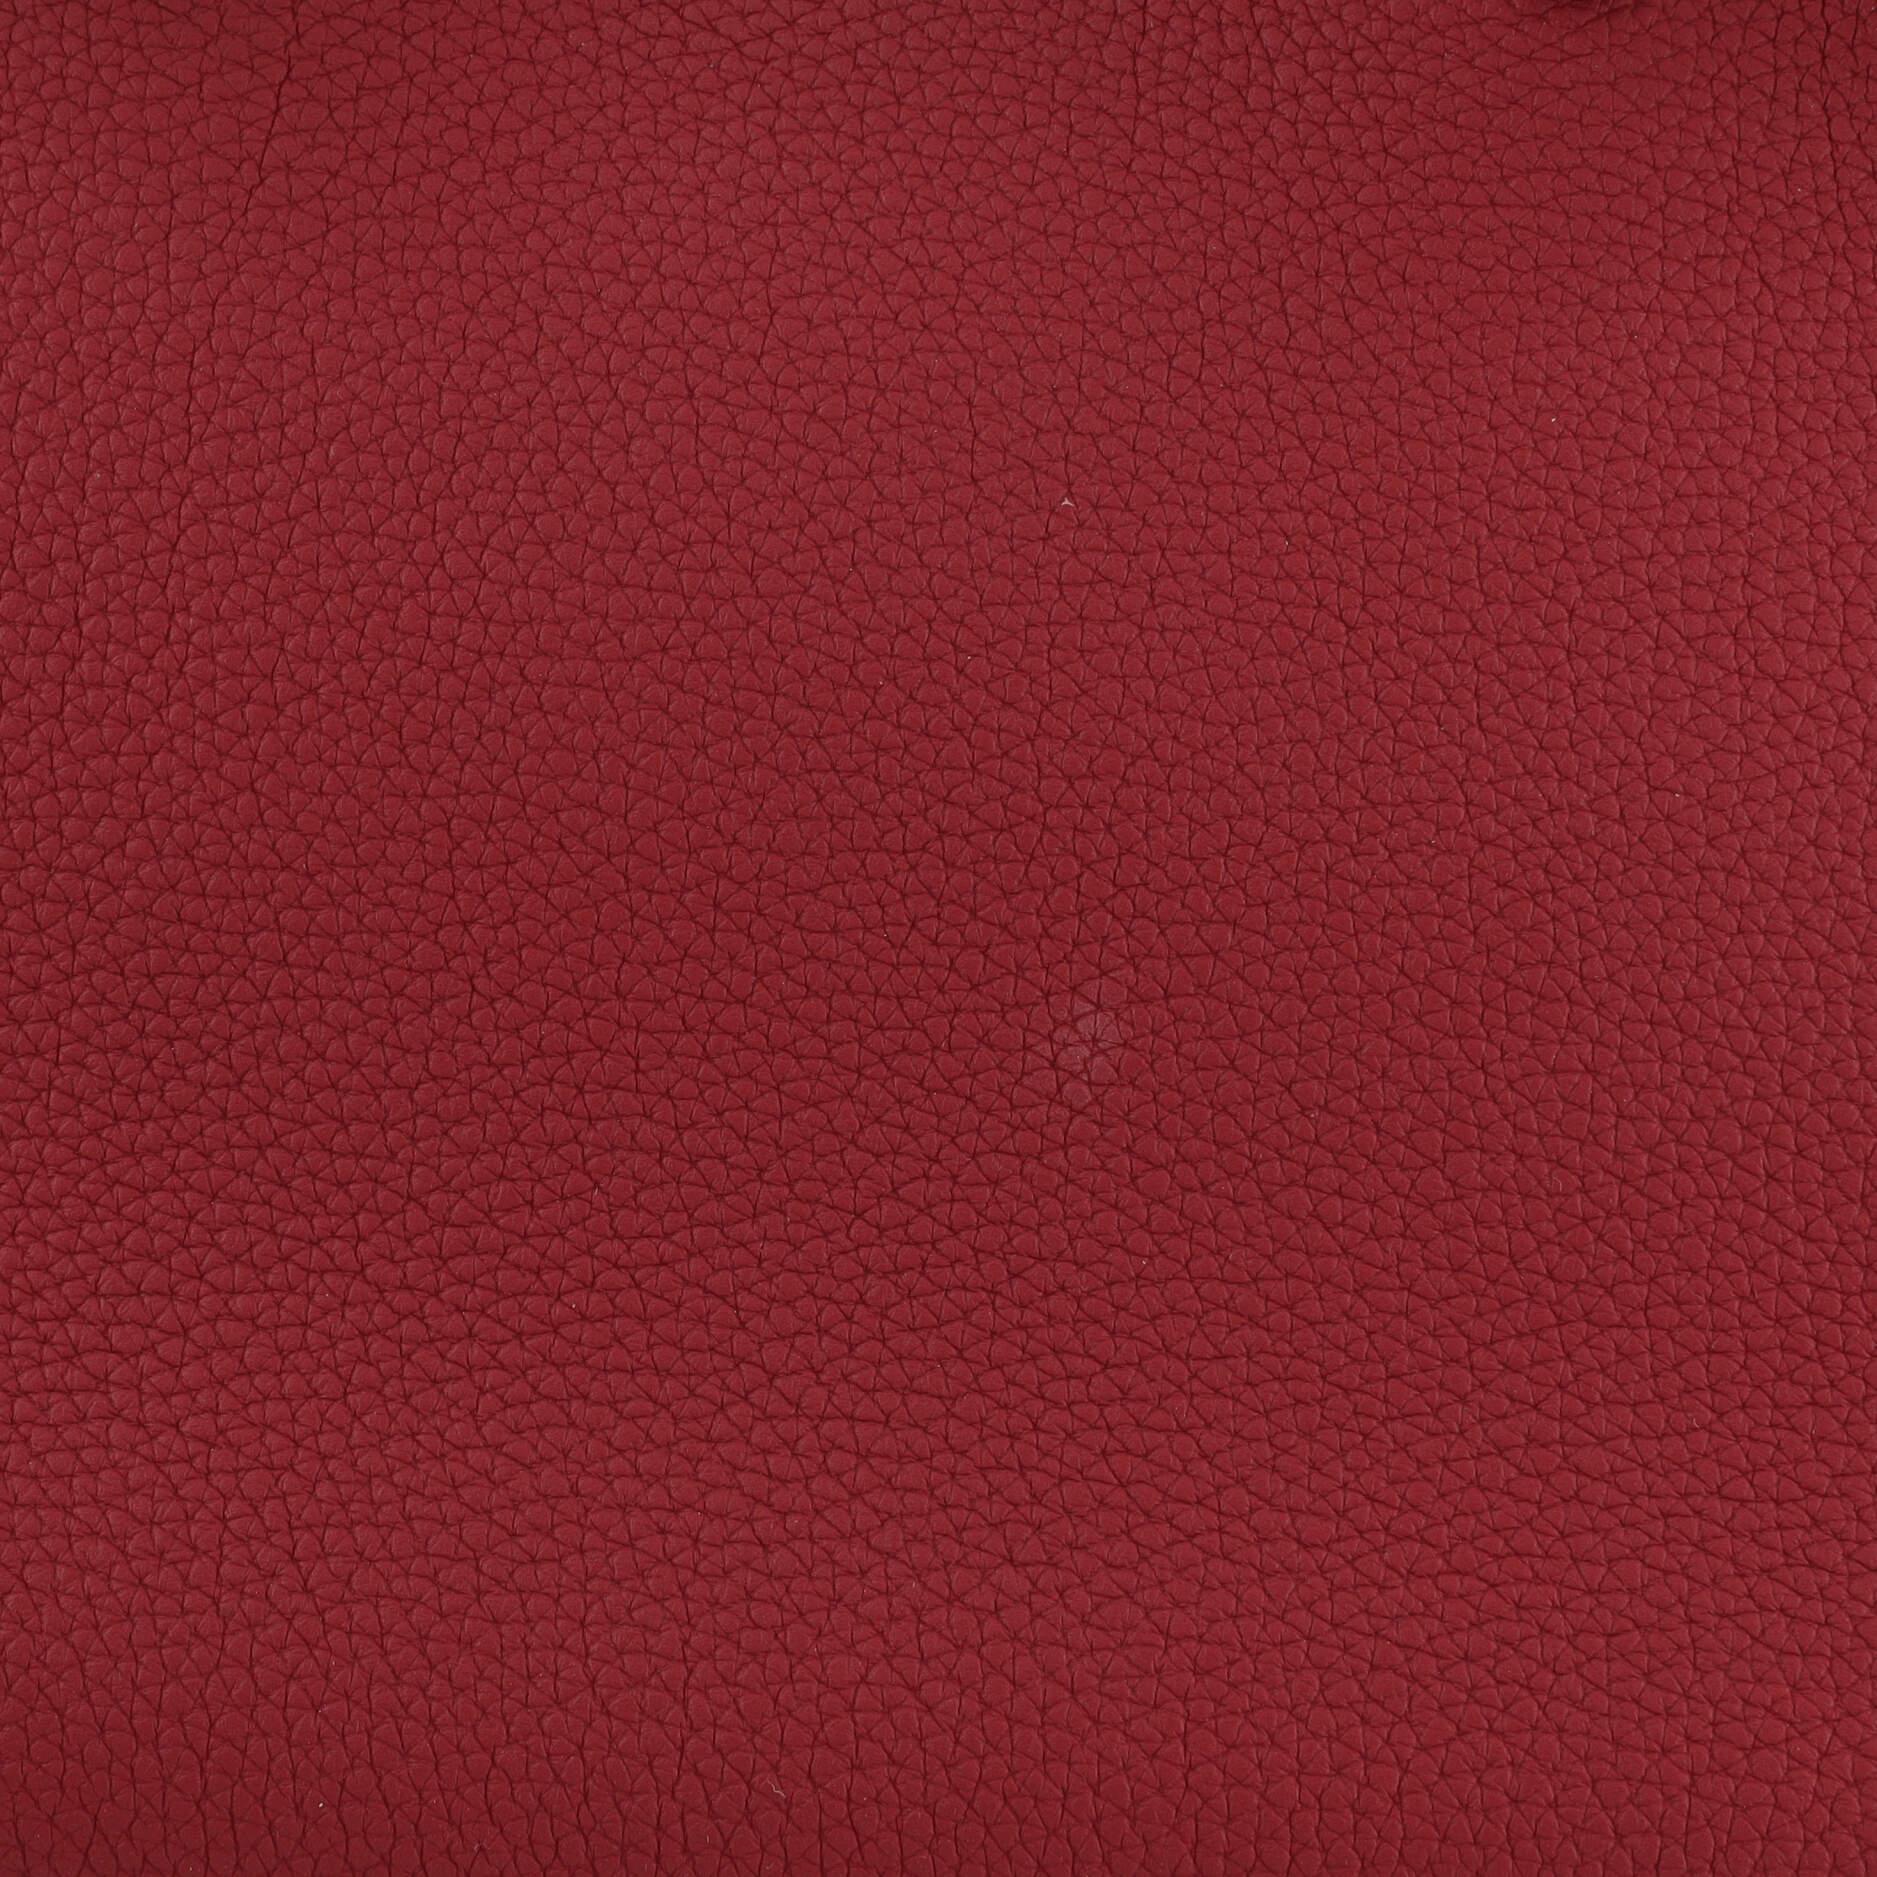 Hermes Birkin Handbag Rouge Grenat Togo with Gold Hardware 30 5